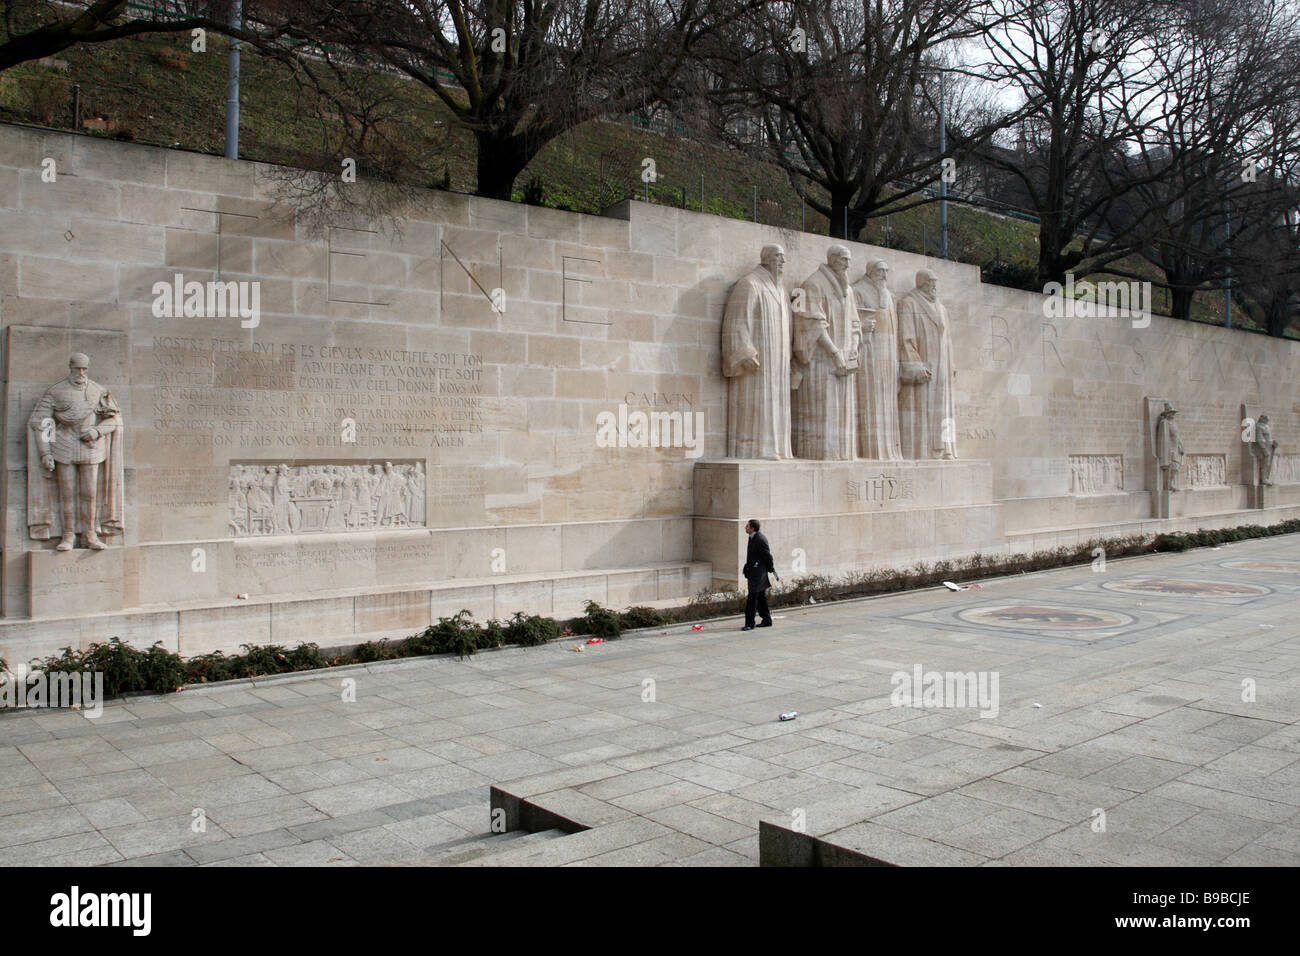 der Reformer-Wand, es zeigt die wichtigsten Protagonisten und Ereignisse der Reformation Parc des Bastions Genf Schweiz Stockfoto